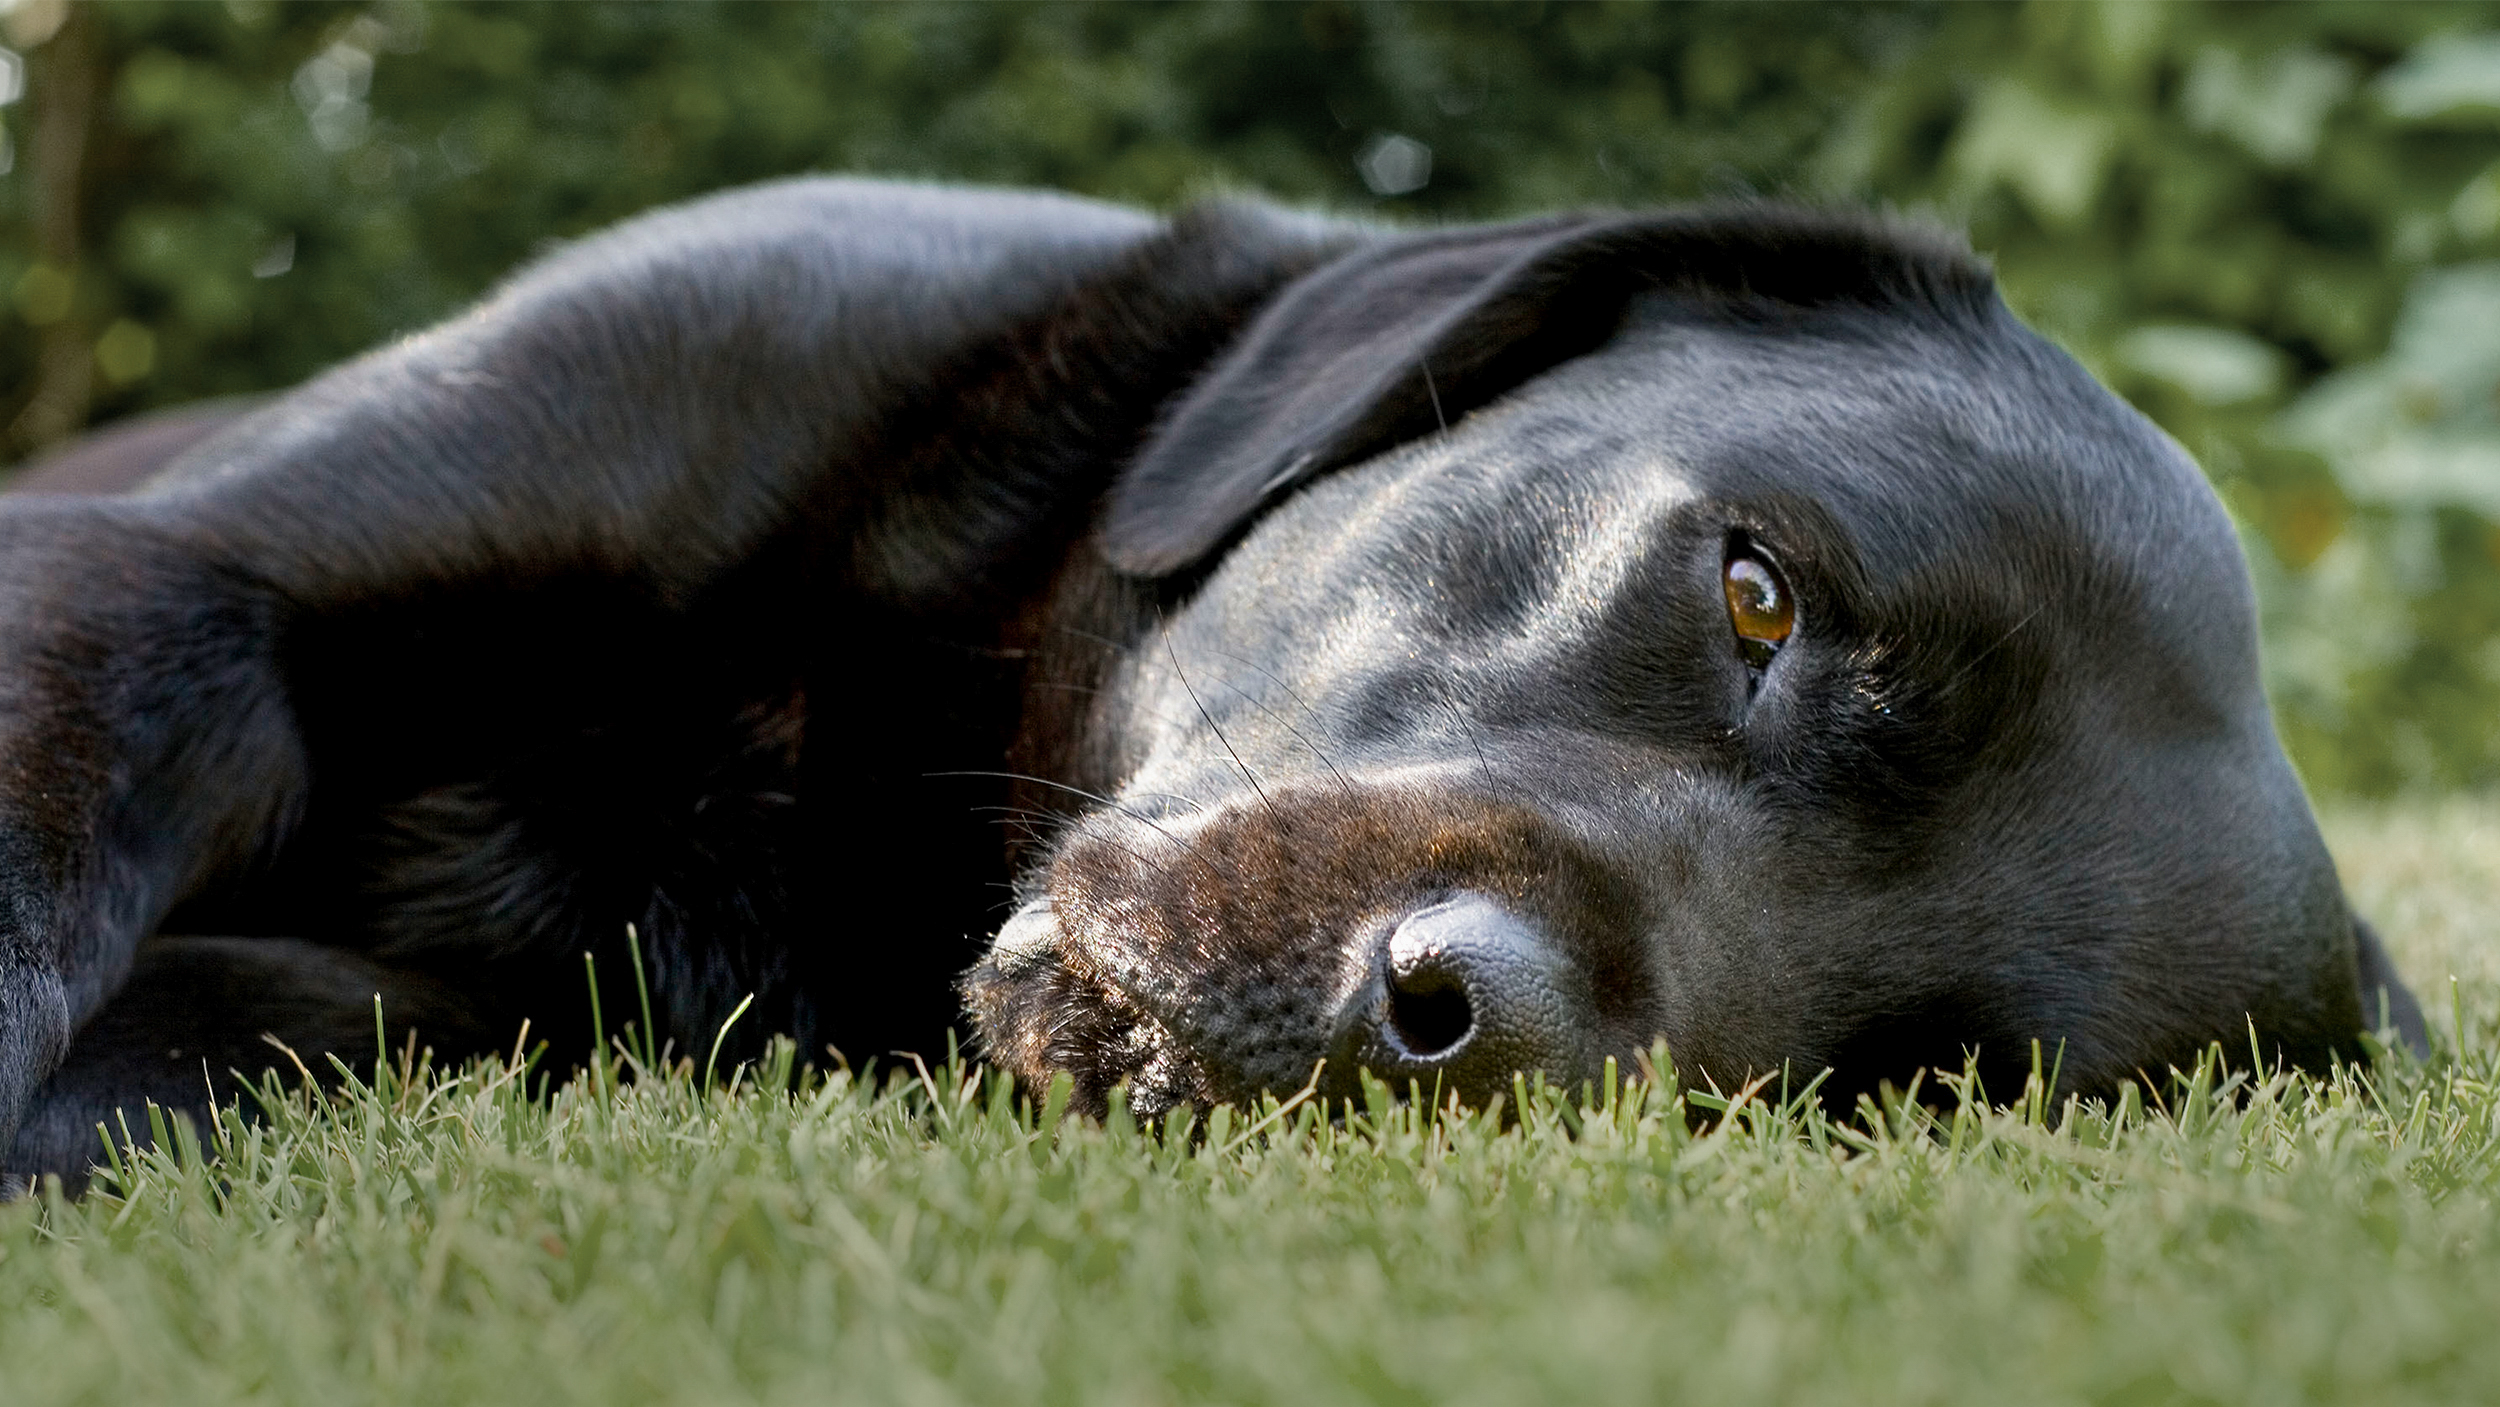 Adult black Labrador Retriever lying down outdoors in a garden.